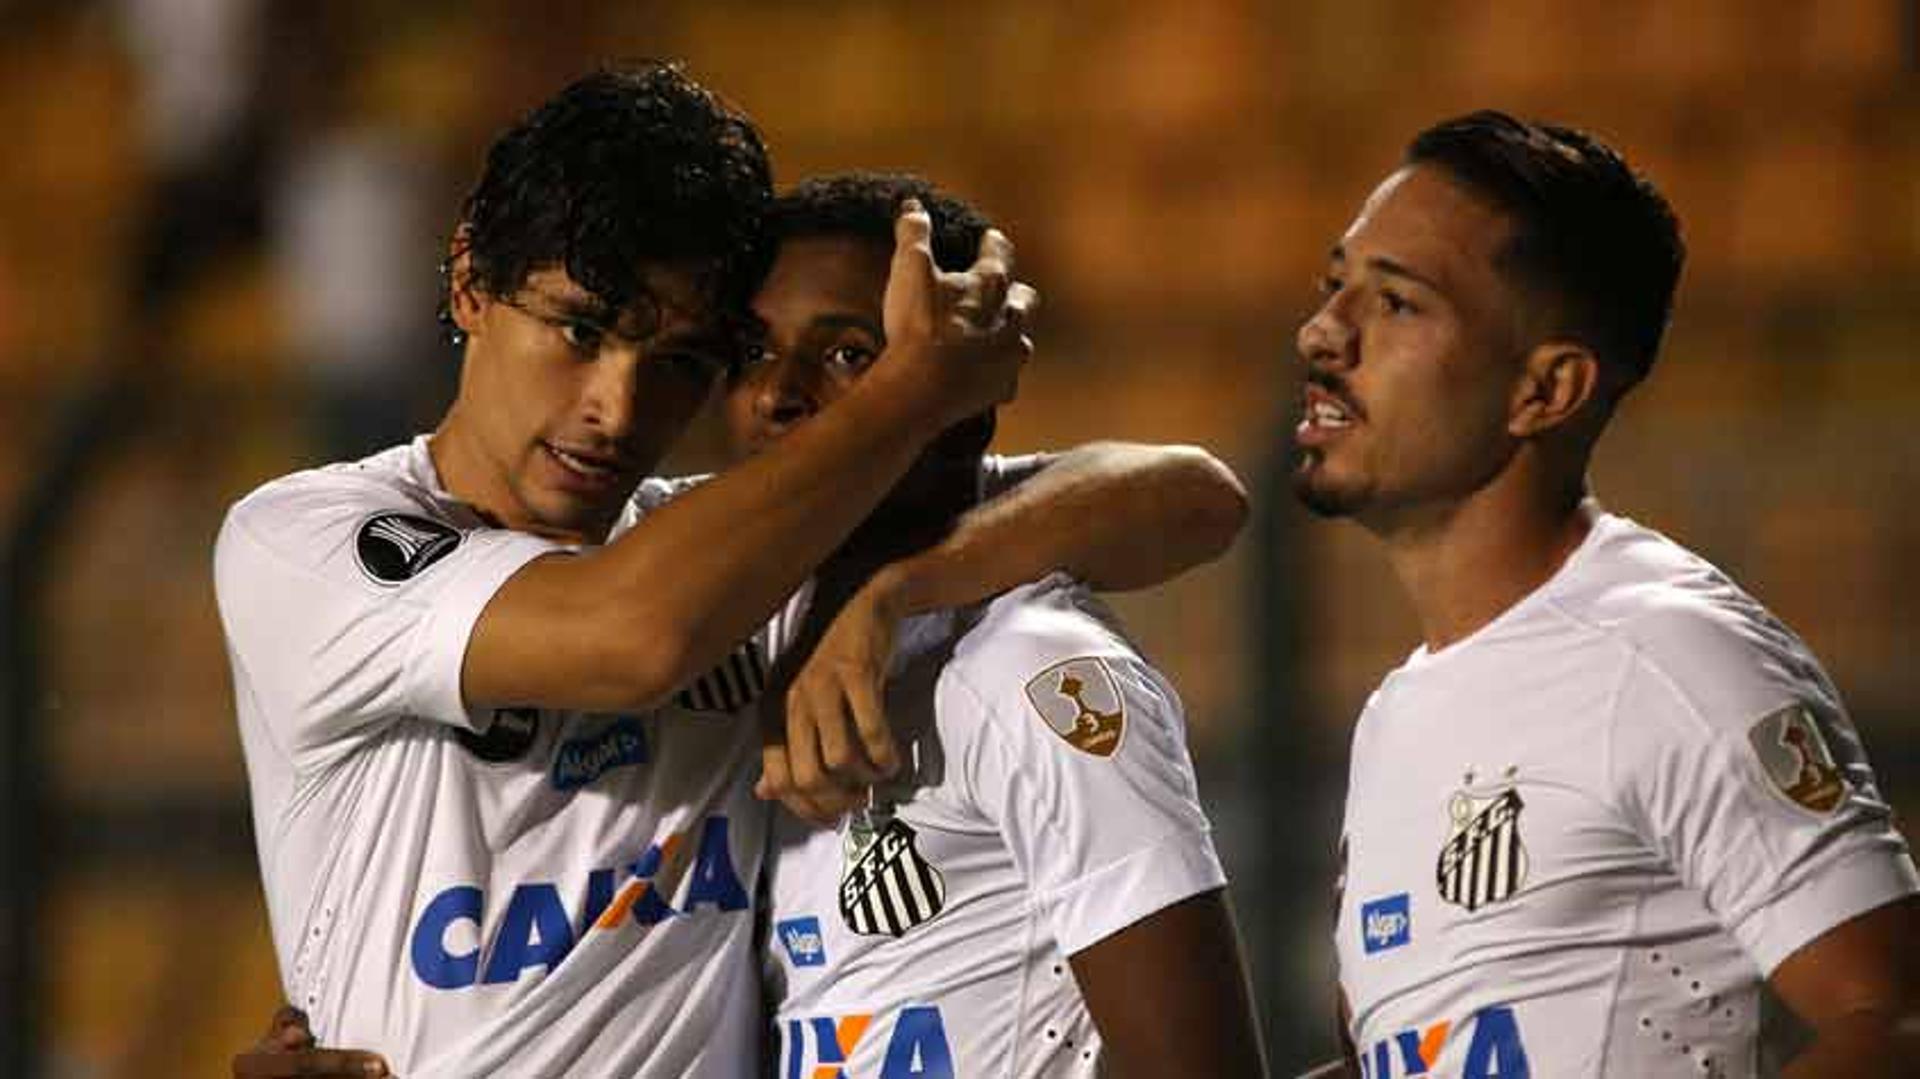 O Santos derrotou o Nacional (URU) por 3 a 1, no Pacaembu, e recuperou-se do tropeço na estreia na Libertadores. O garoto Rodrygo, de apenas 16 anos, foi um dos destaque, com um golaço. Eduardo Sasha marcou os outros dois e também se destacou (notas por Gabriela Brino)